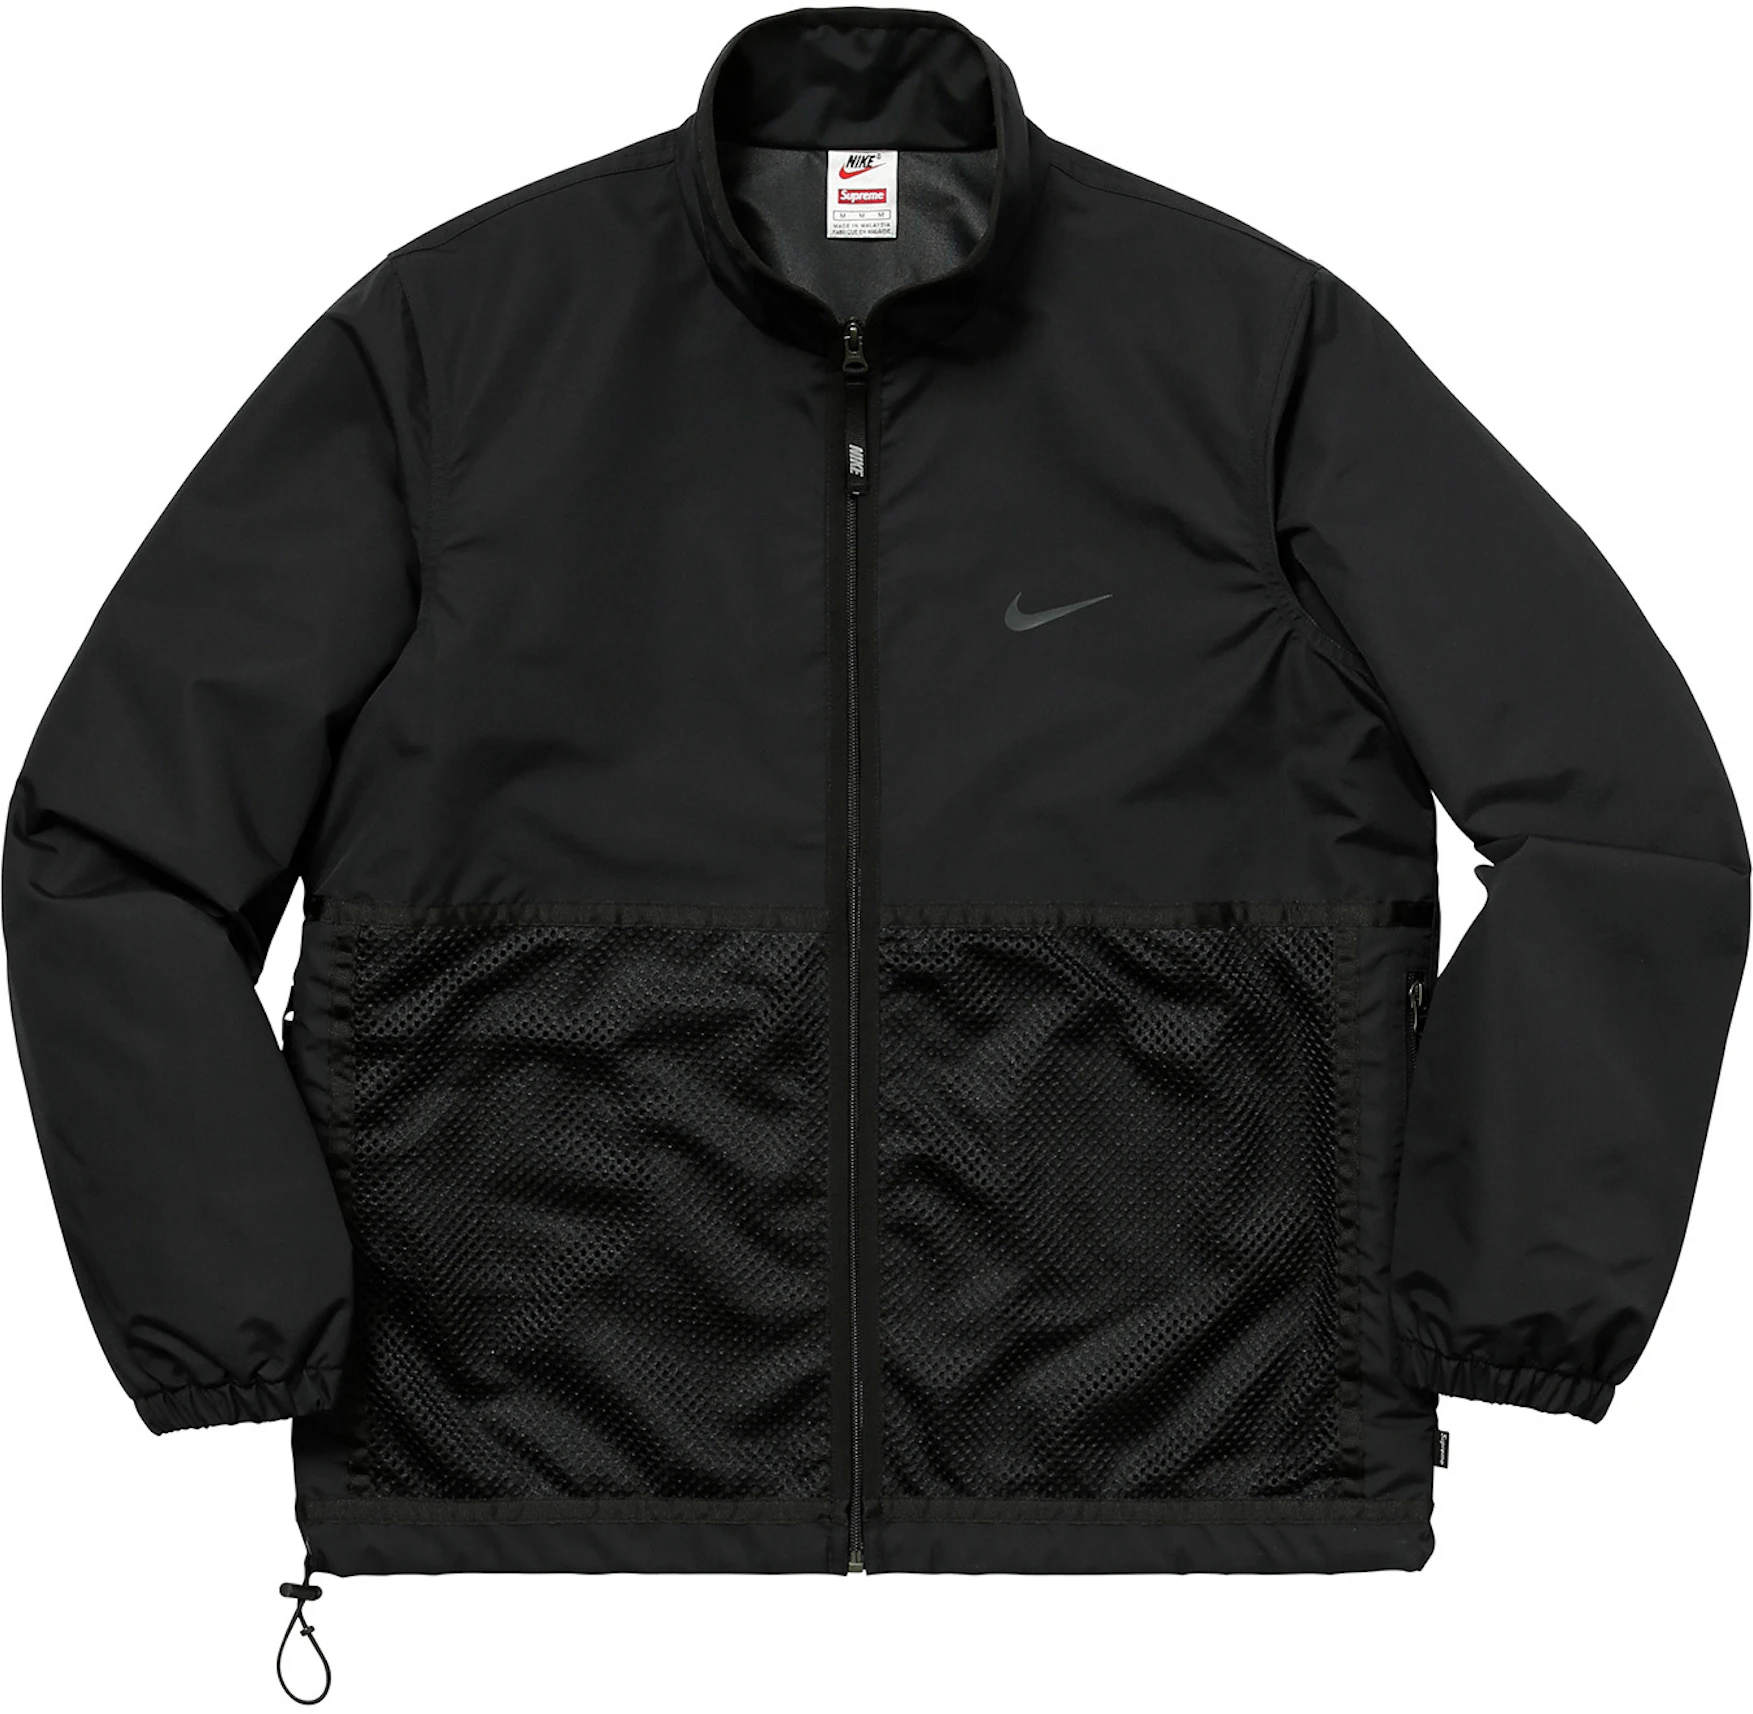 Supreme Nike Running Jacket Black - FW17 -